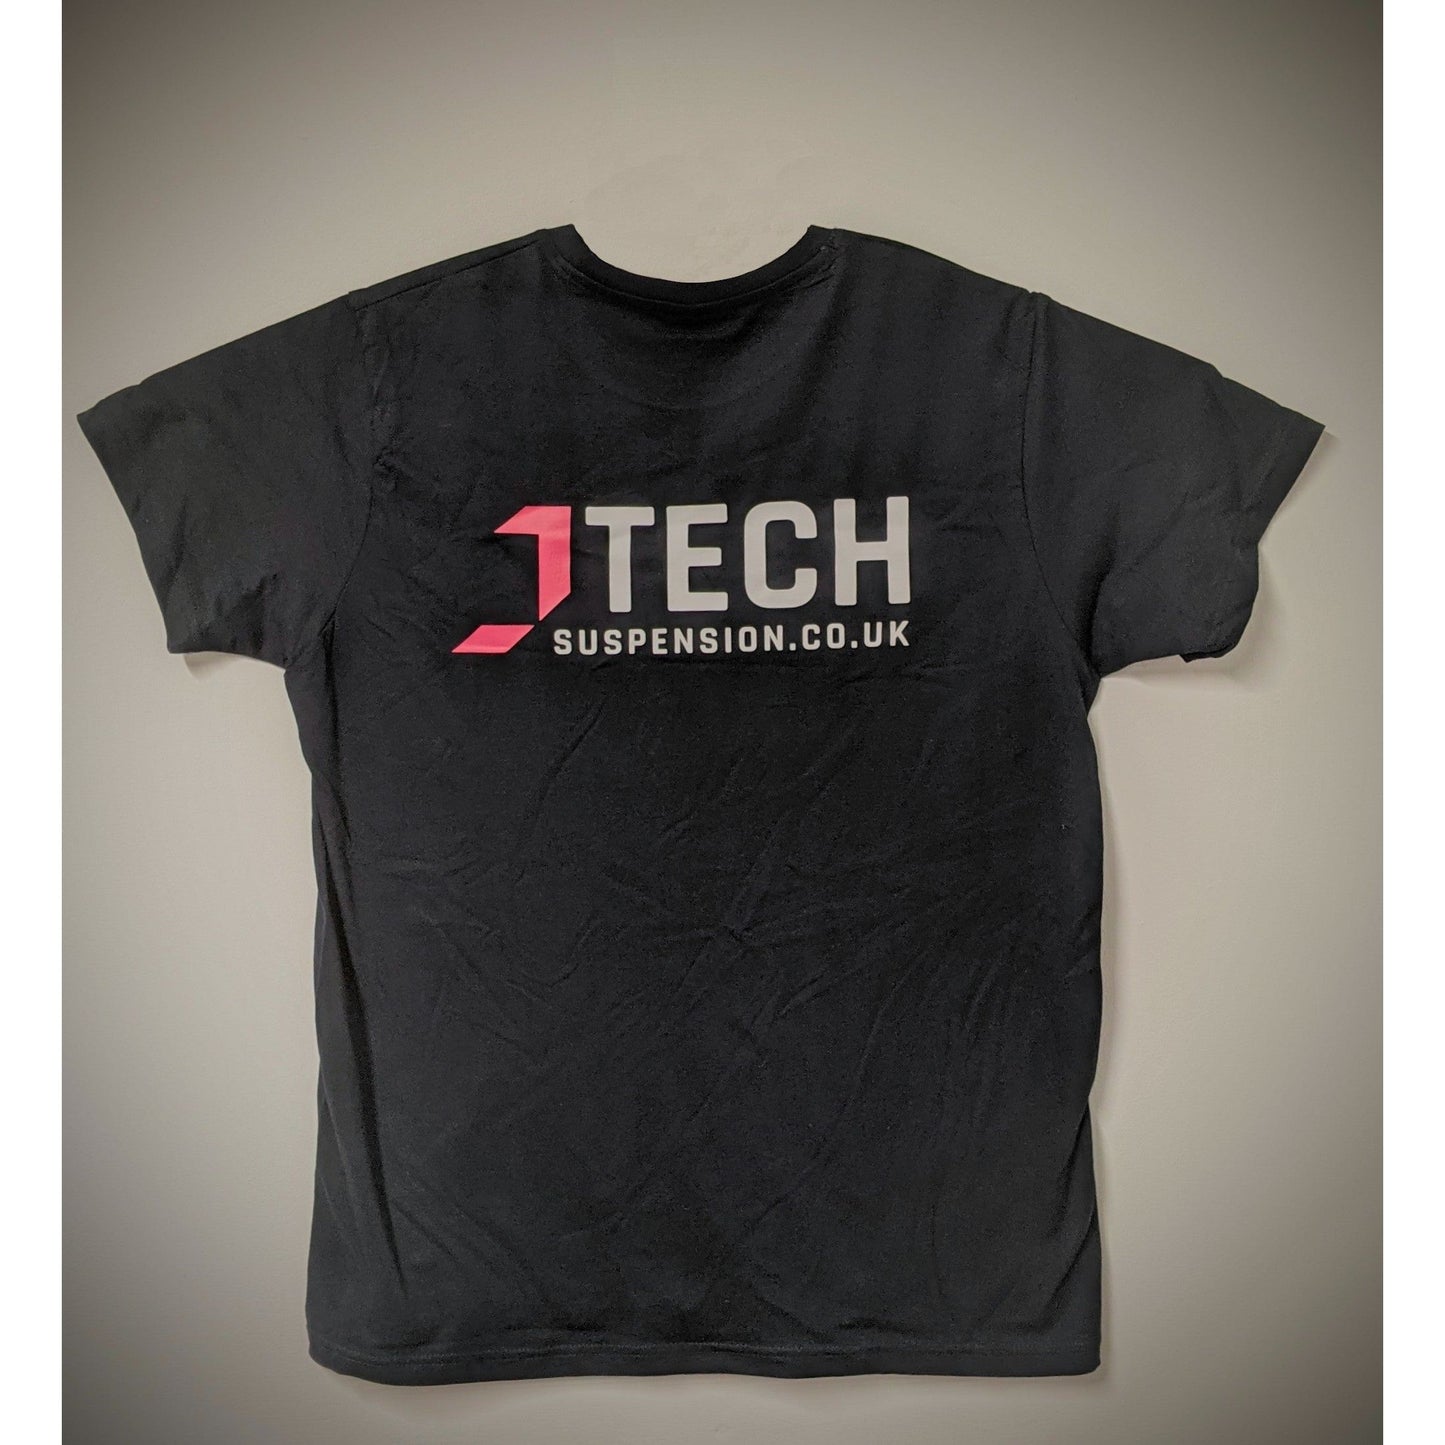 J-TECH T-shirt